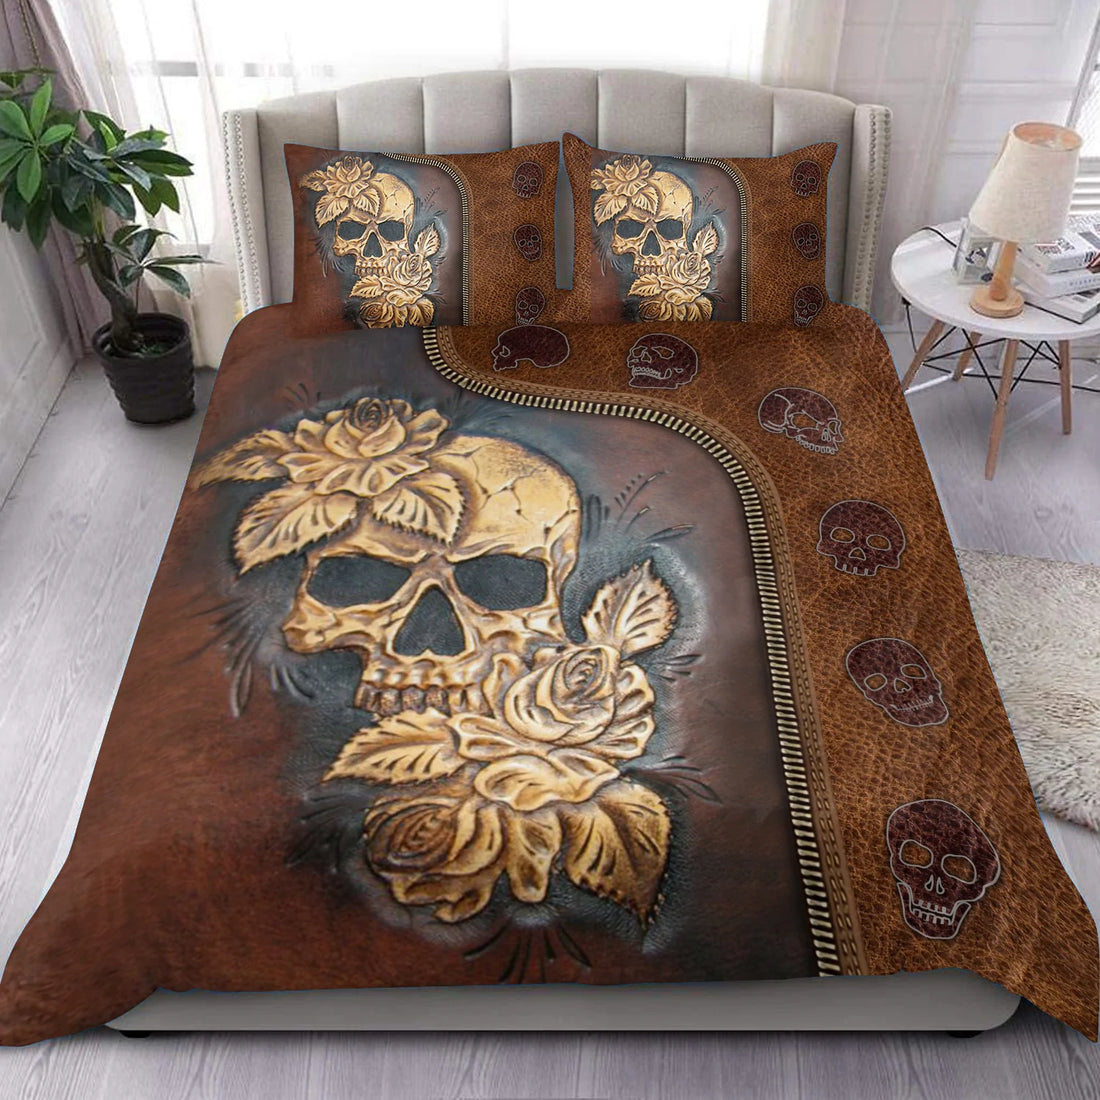 Skull Bedding Set, Gift for Skull Lovers - PF10162